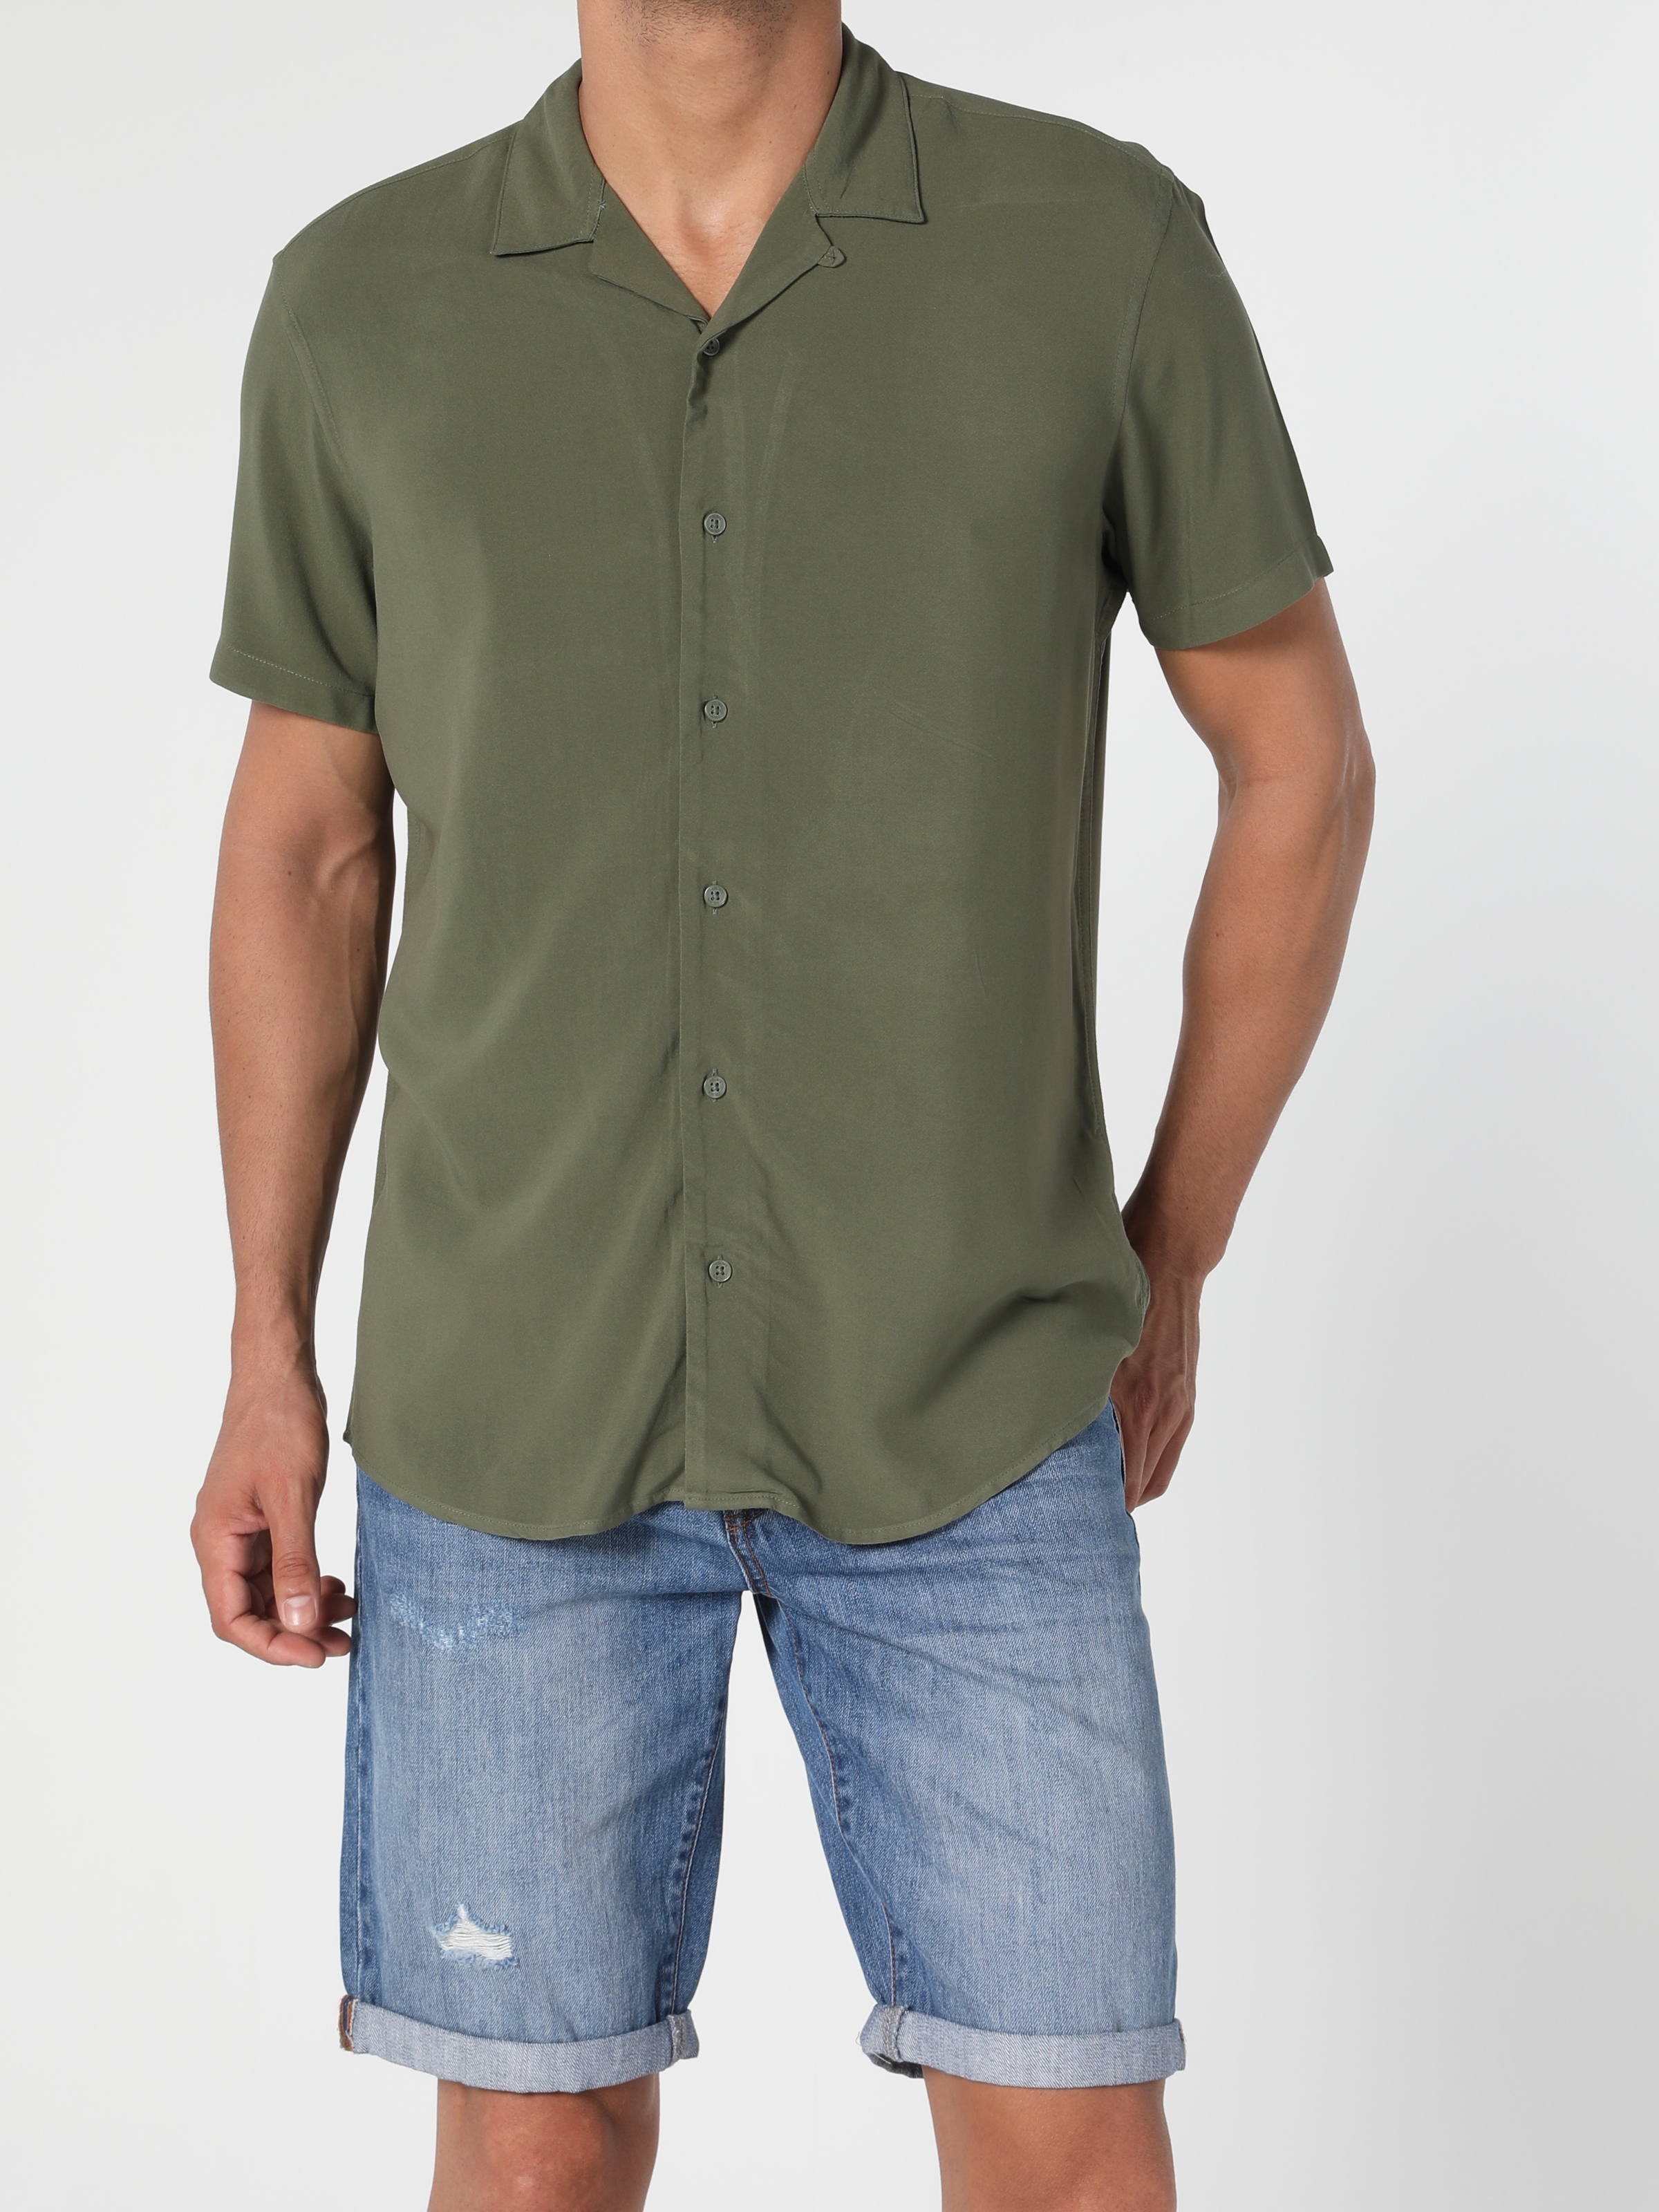 Colins Haki Regular Fit Shirt Neck Erkek Kısa Kol Gömlek. 3